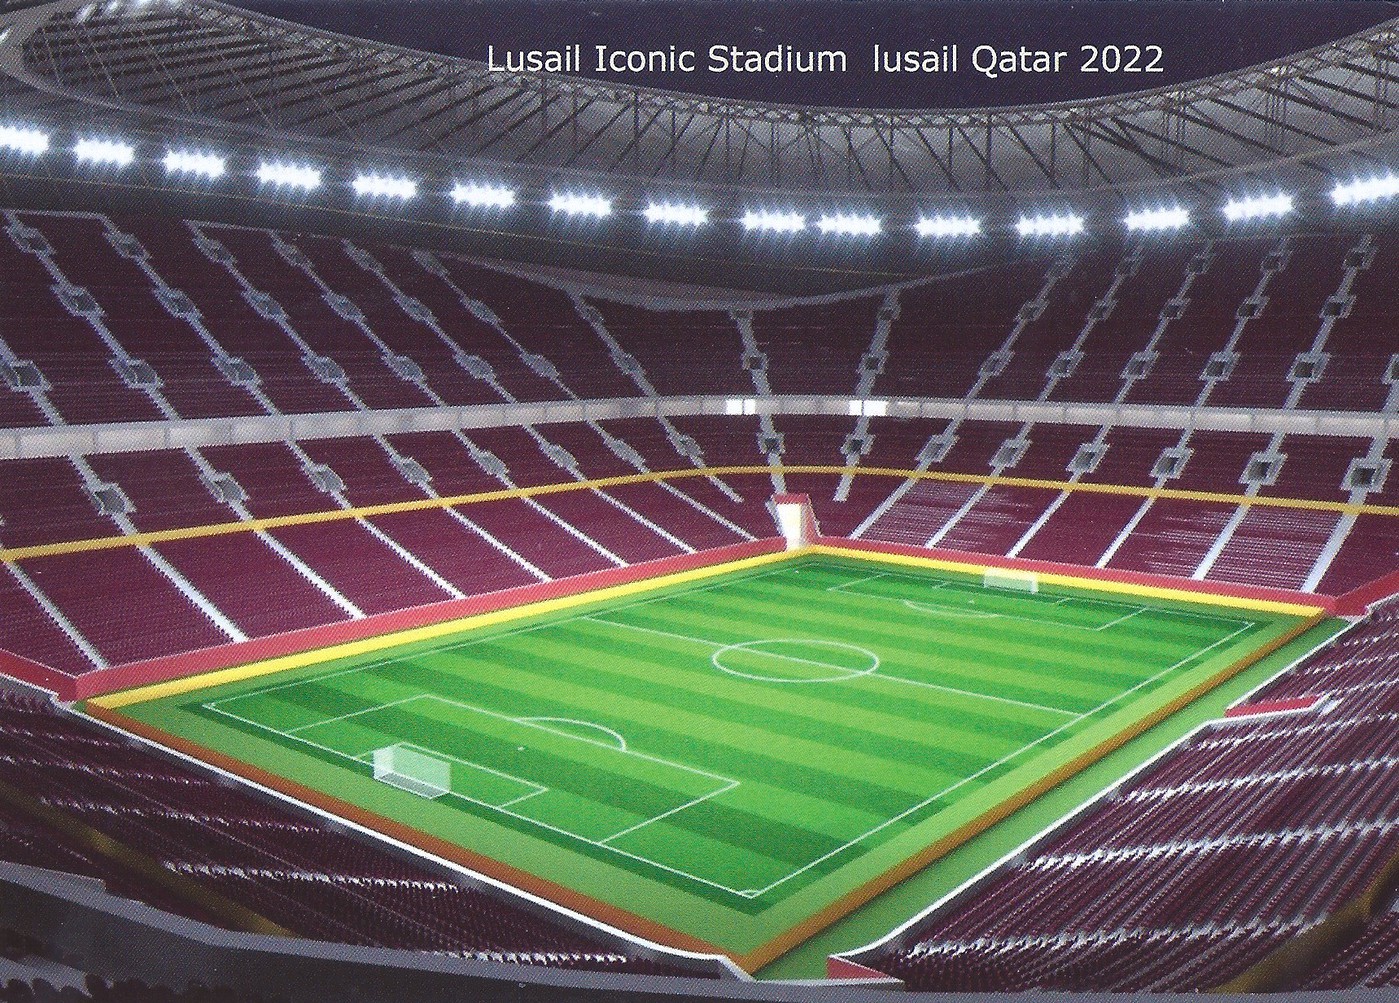 lusail iconic stadium